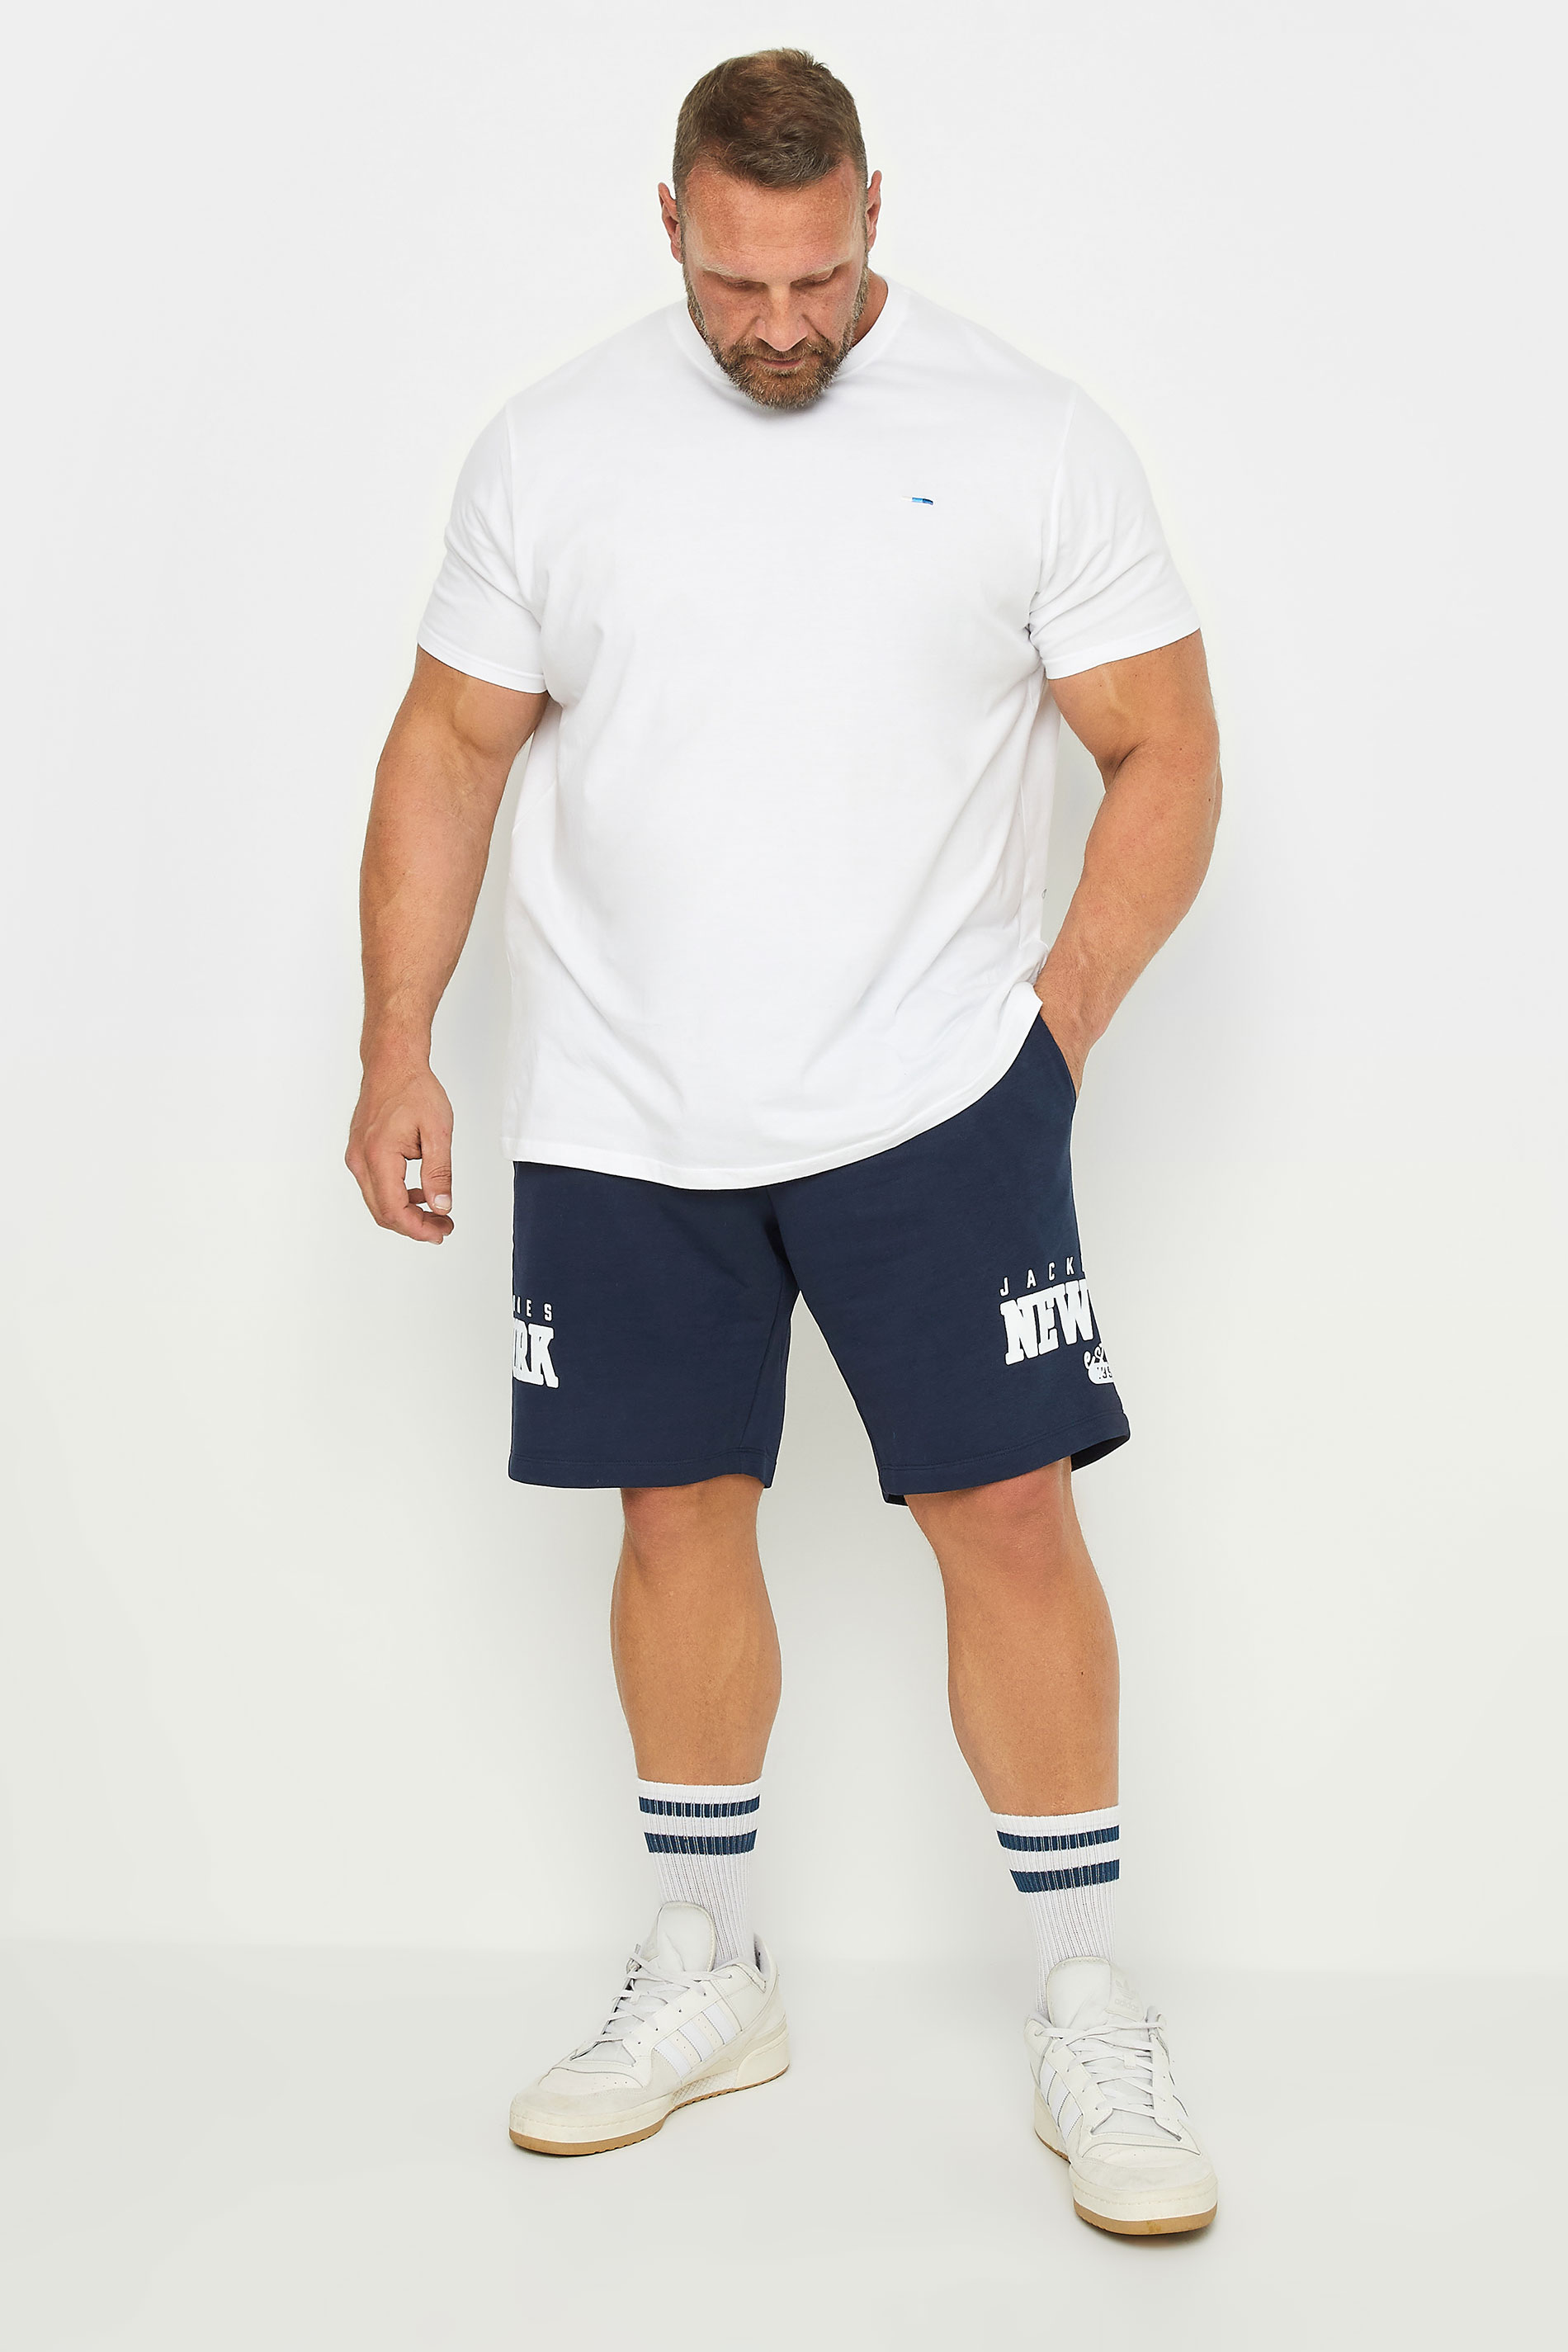 JACK & JONES Navy Blue Sweat Shorts | BadRhino 2